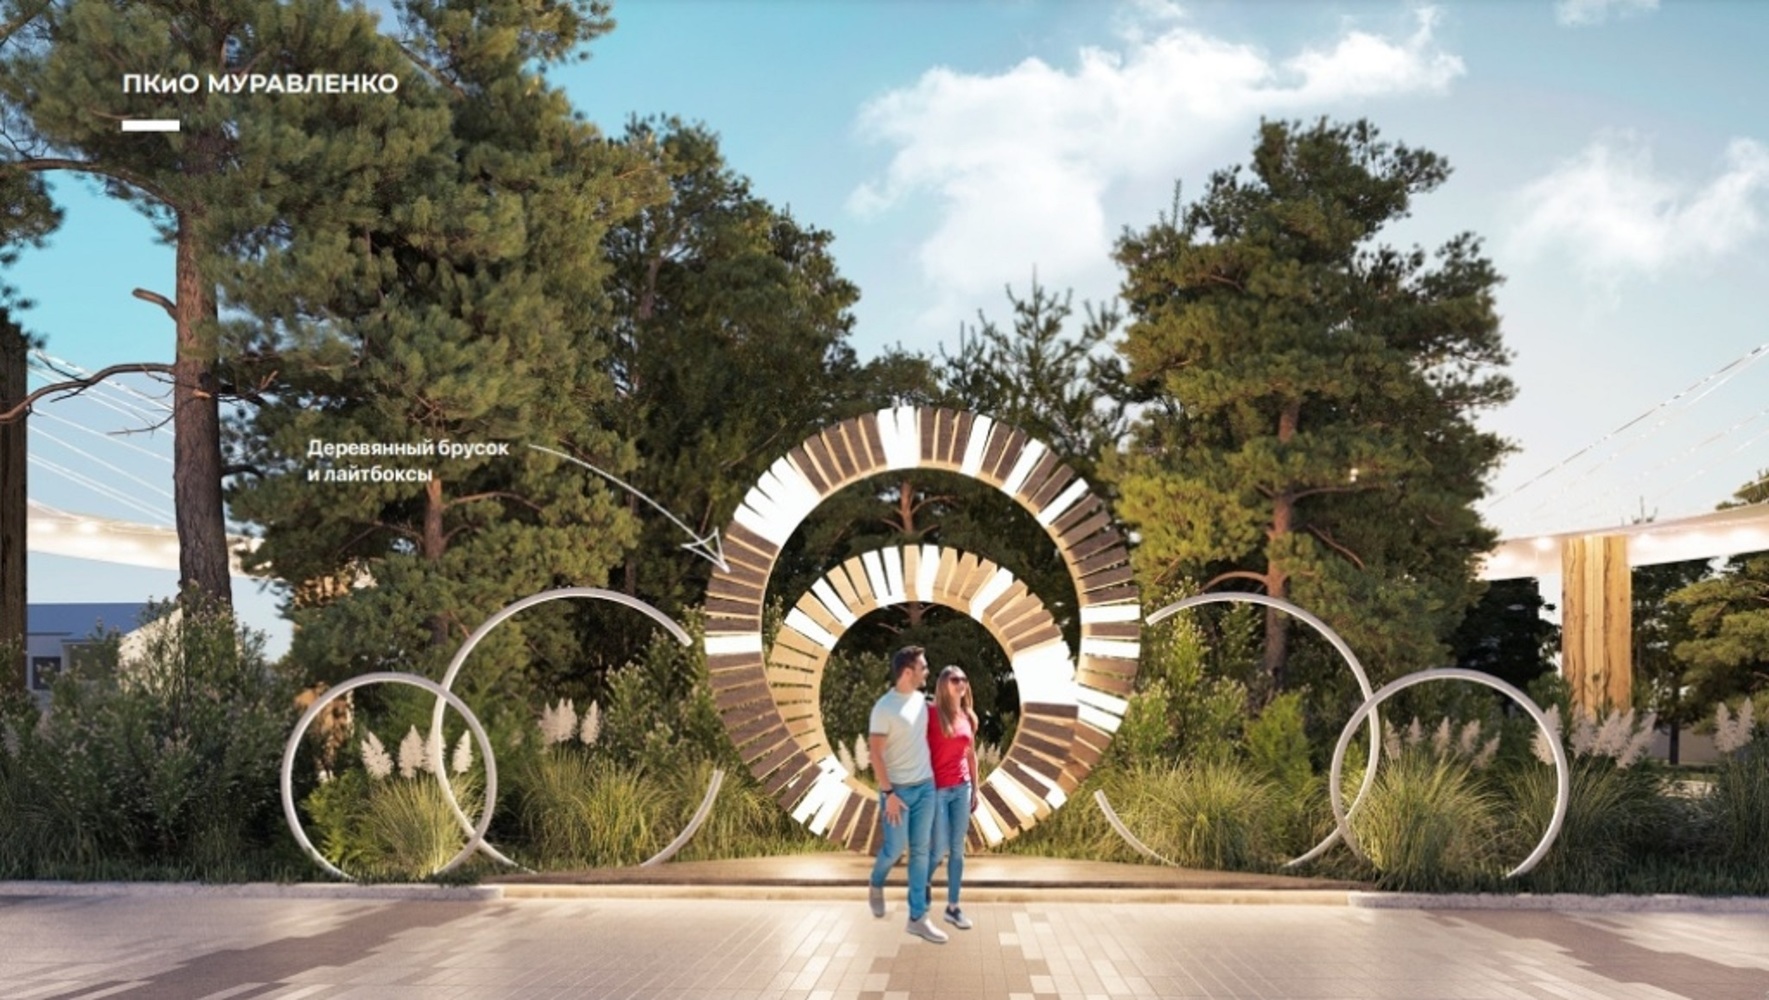 Парк Муравленко ждет масштабная реконструкция: фото дизайн-проекта